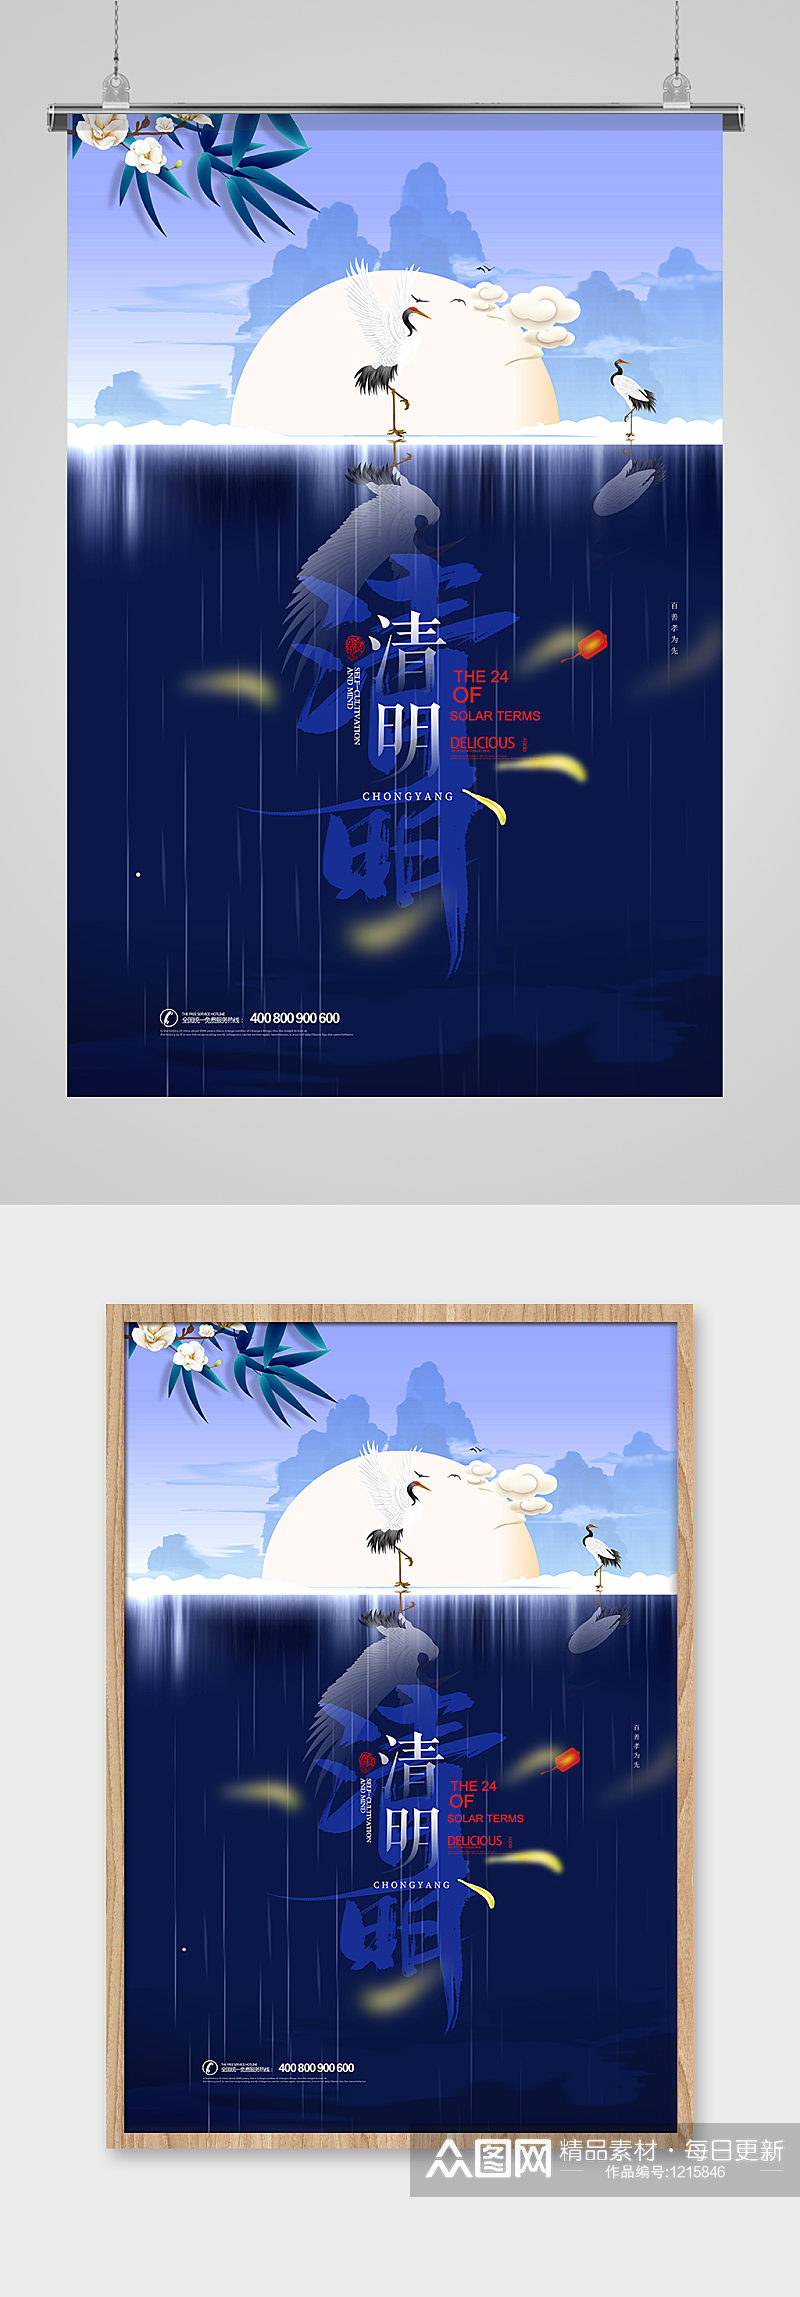 中国风诗意传统节日清明节海报设计素材